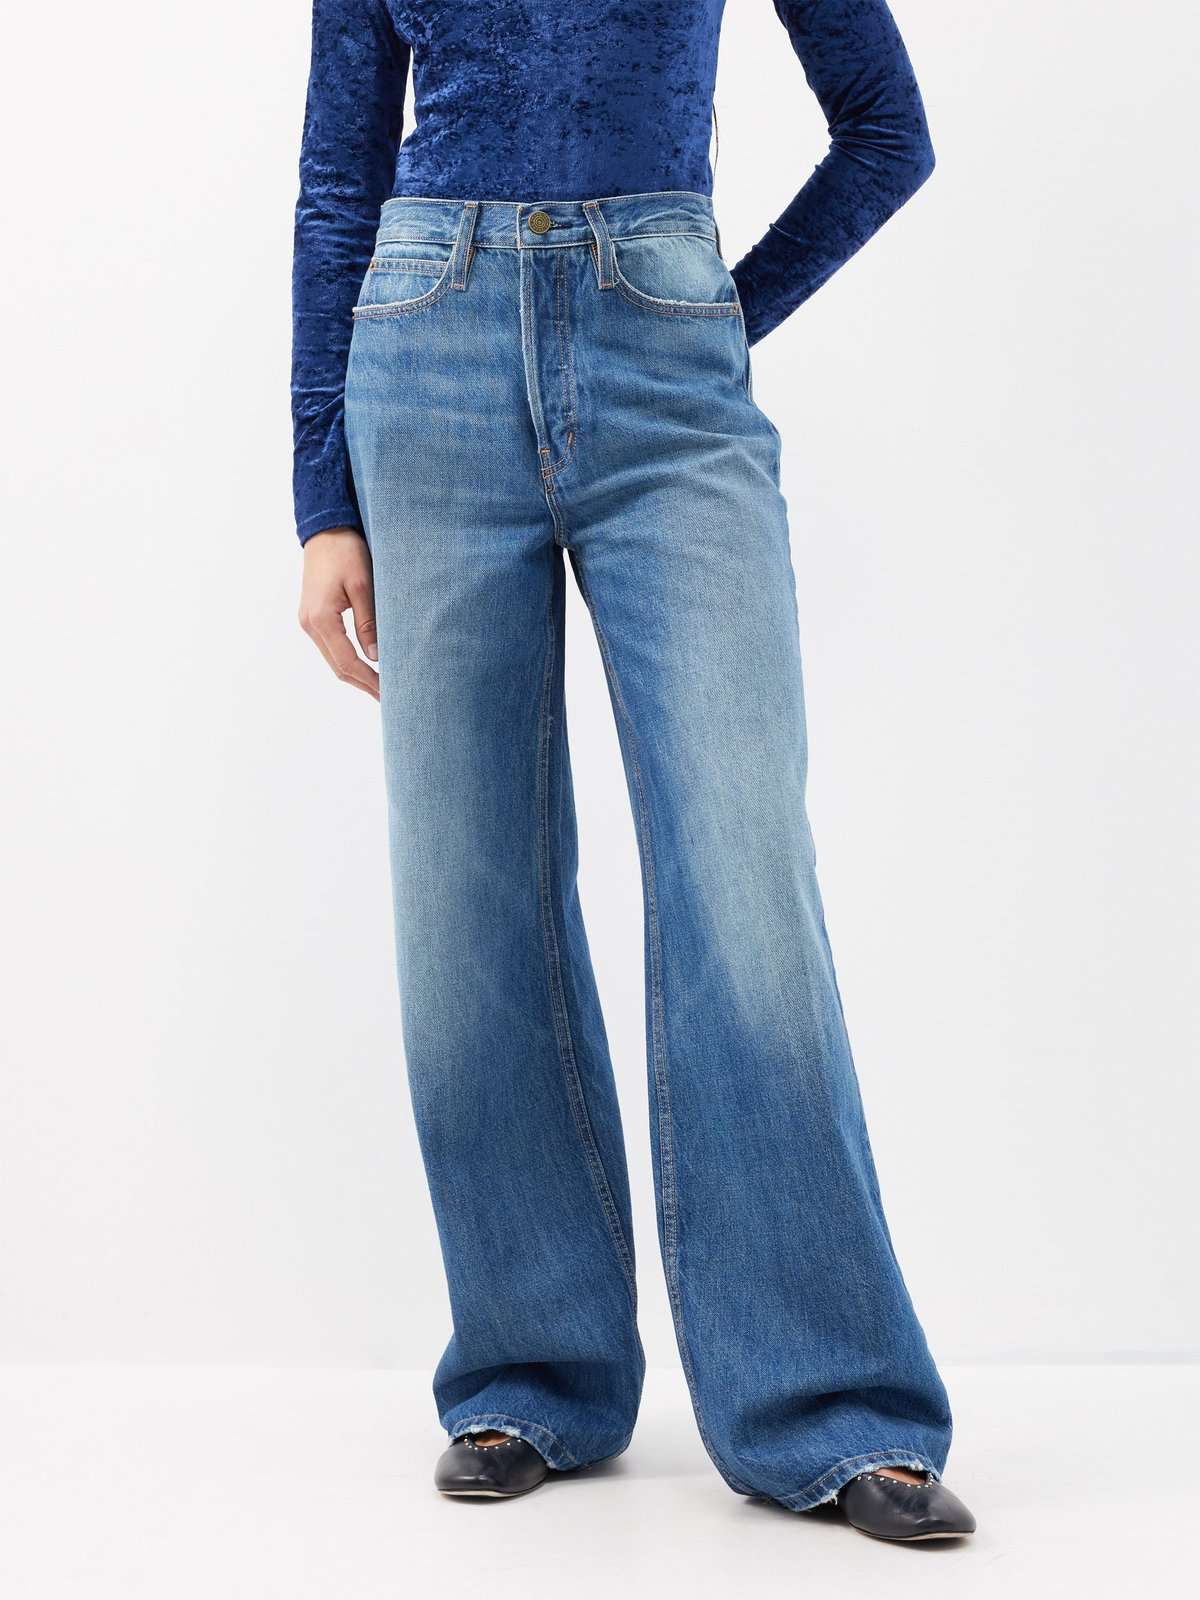 Широкие джинсы 1978 года из переработанного хлопка.